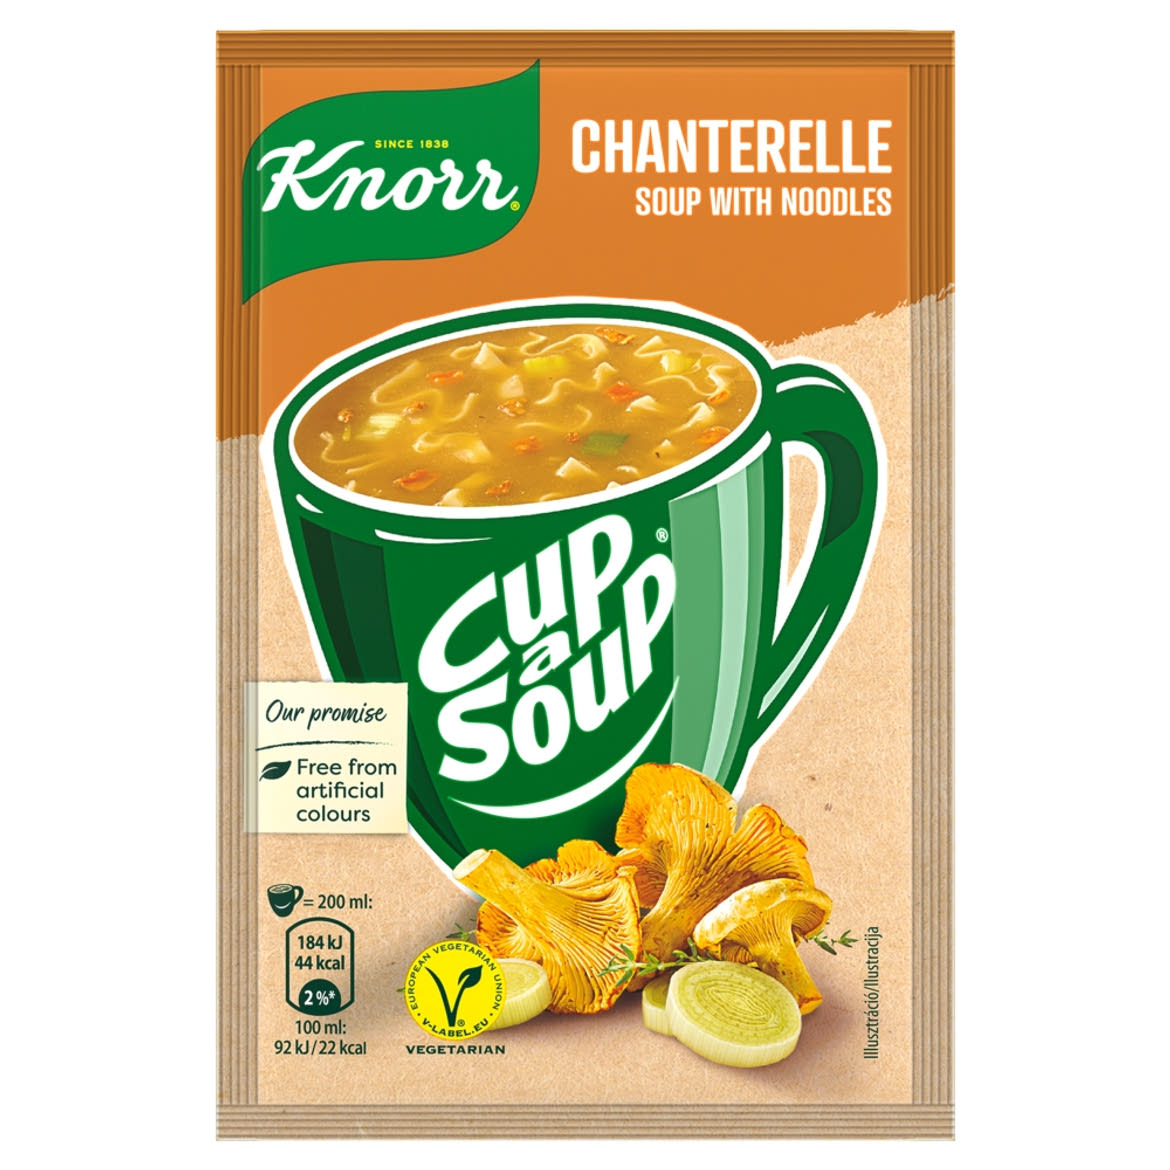 Knorr instant rókagomba-krémleves tésztával